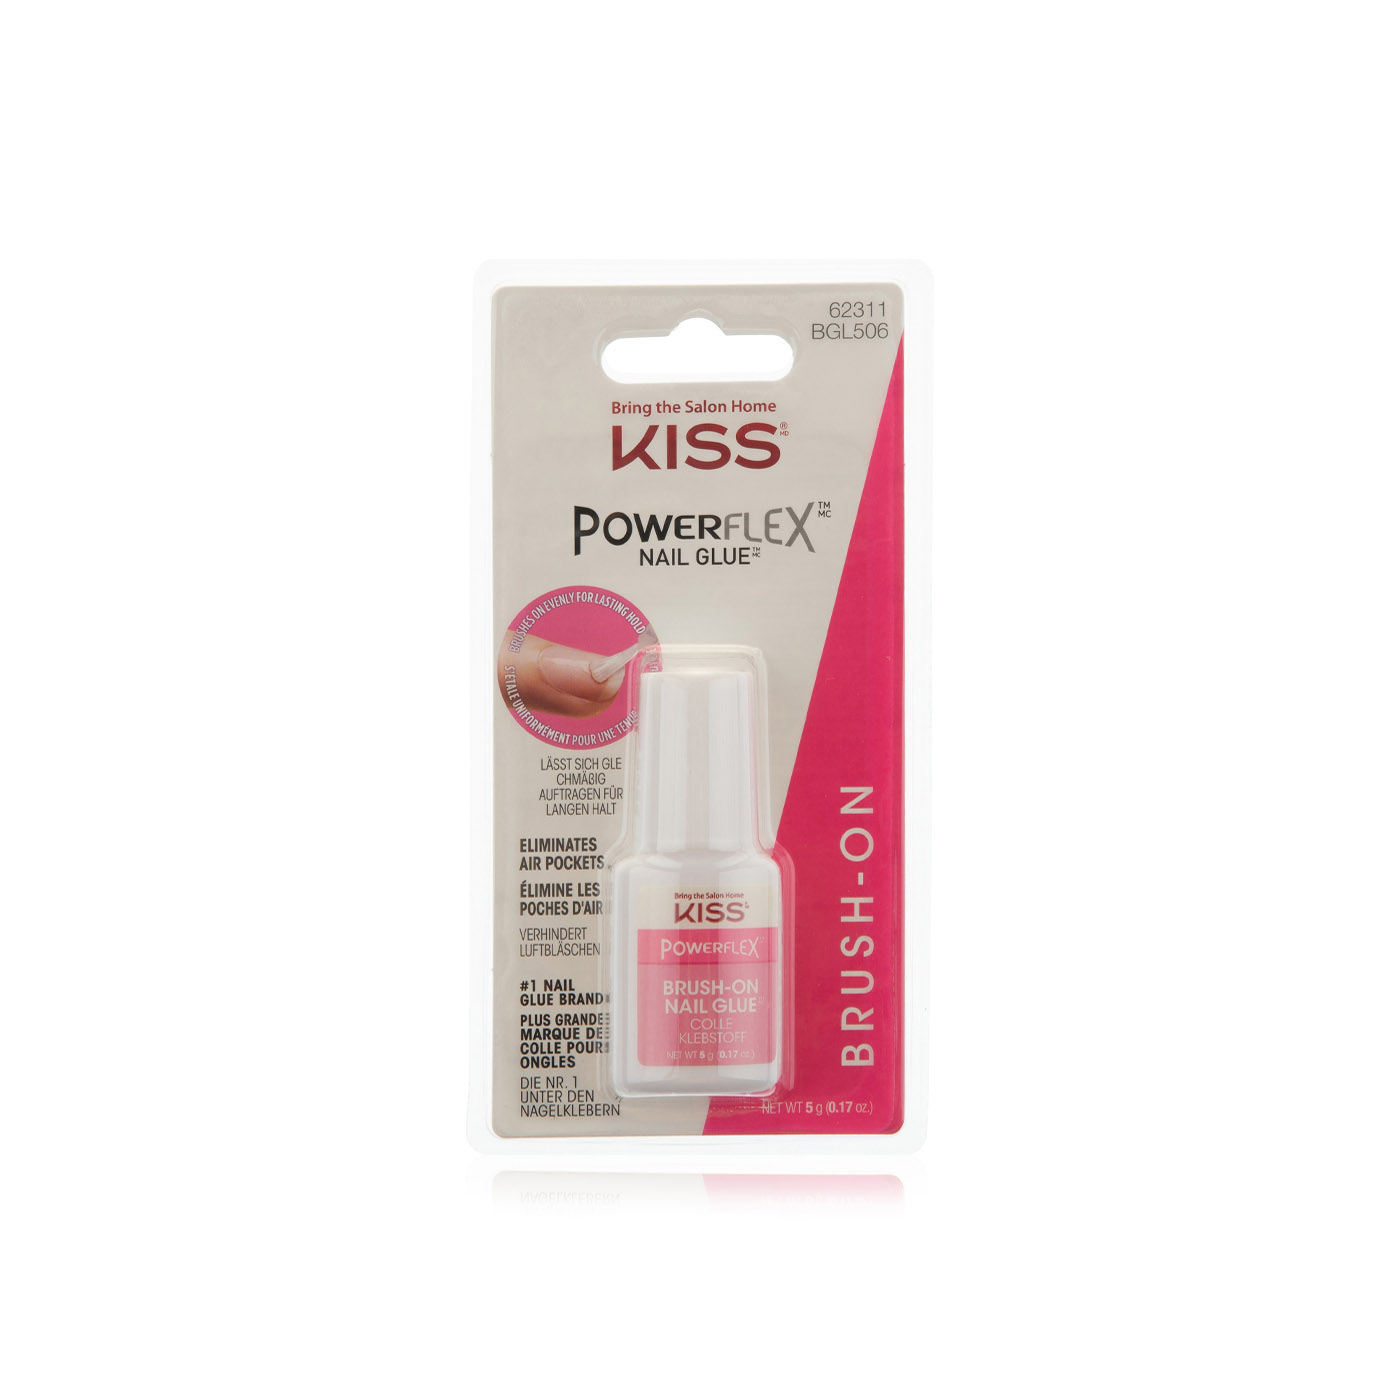 Kiss powerflex brush-on nail glue - Waitrose UAE & Partners